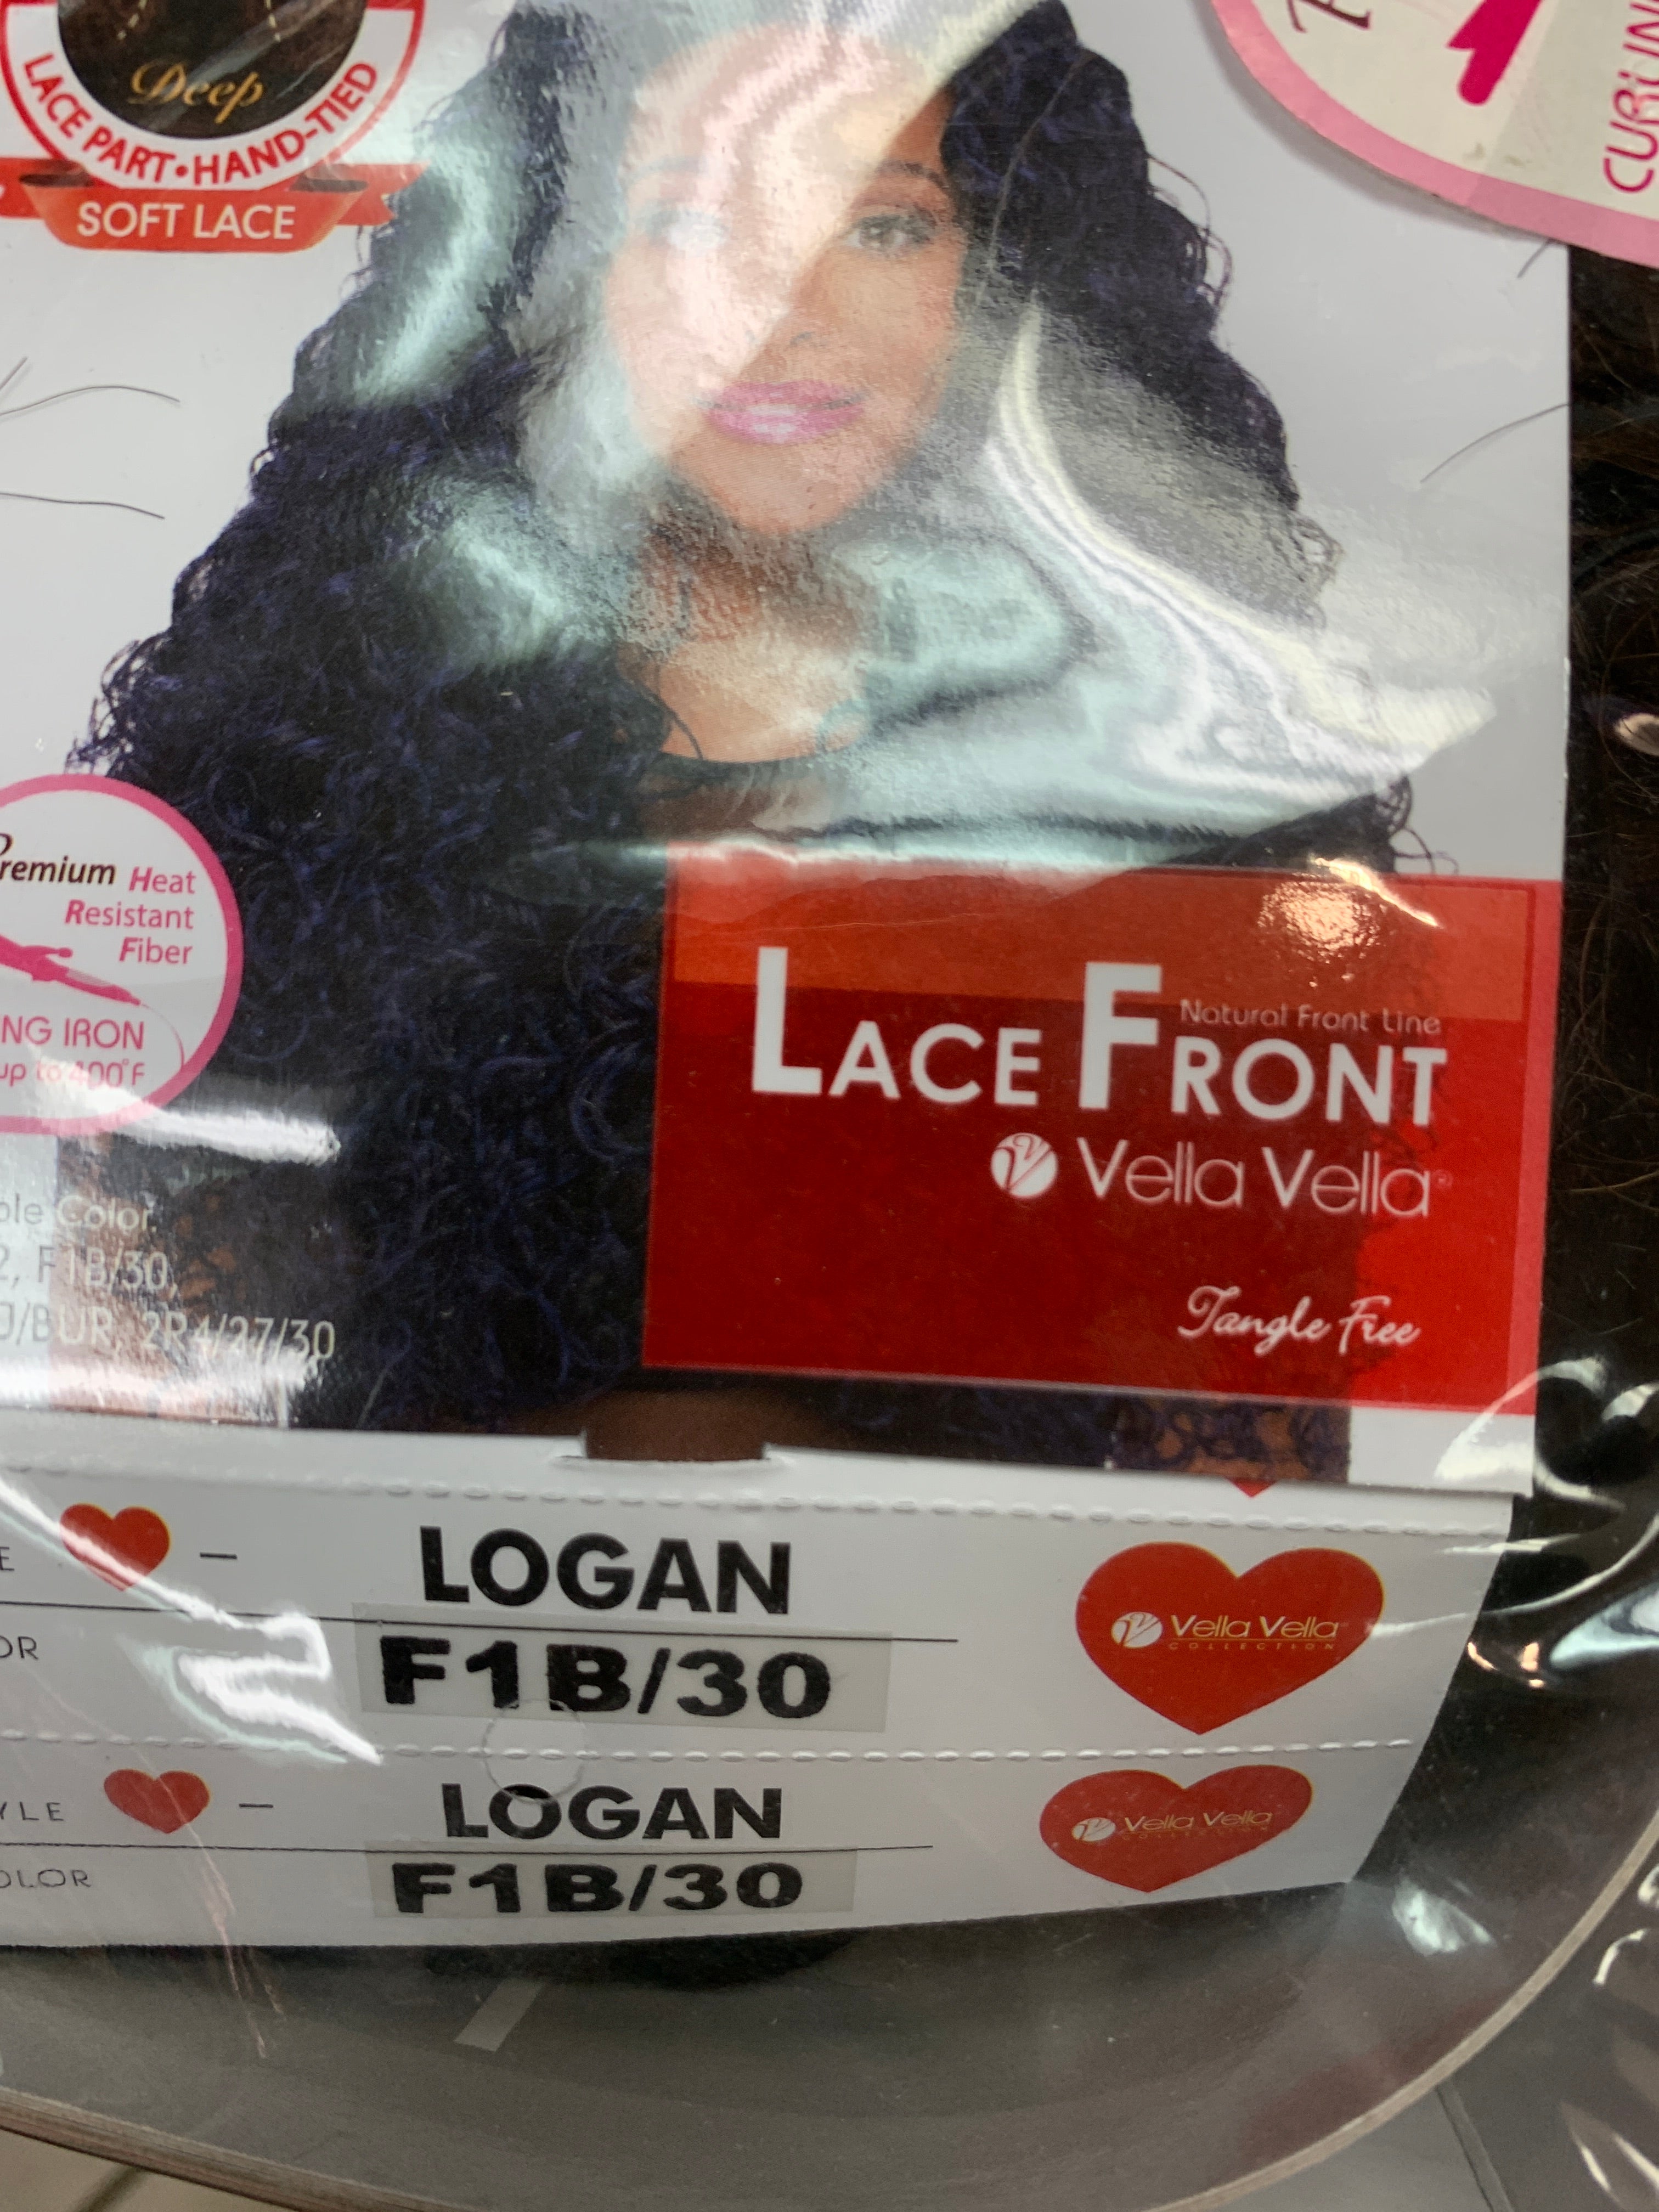 Sensual lace front Logan